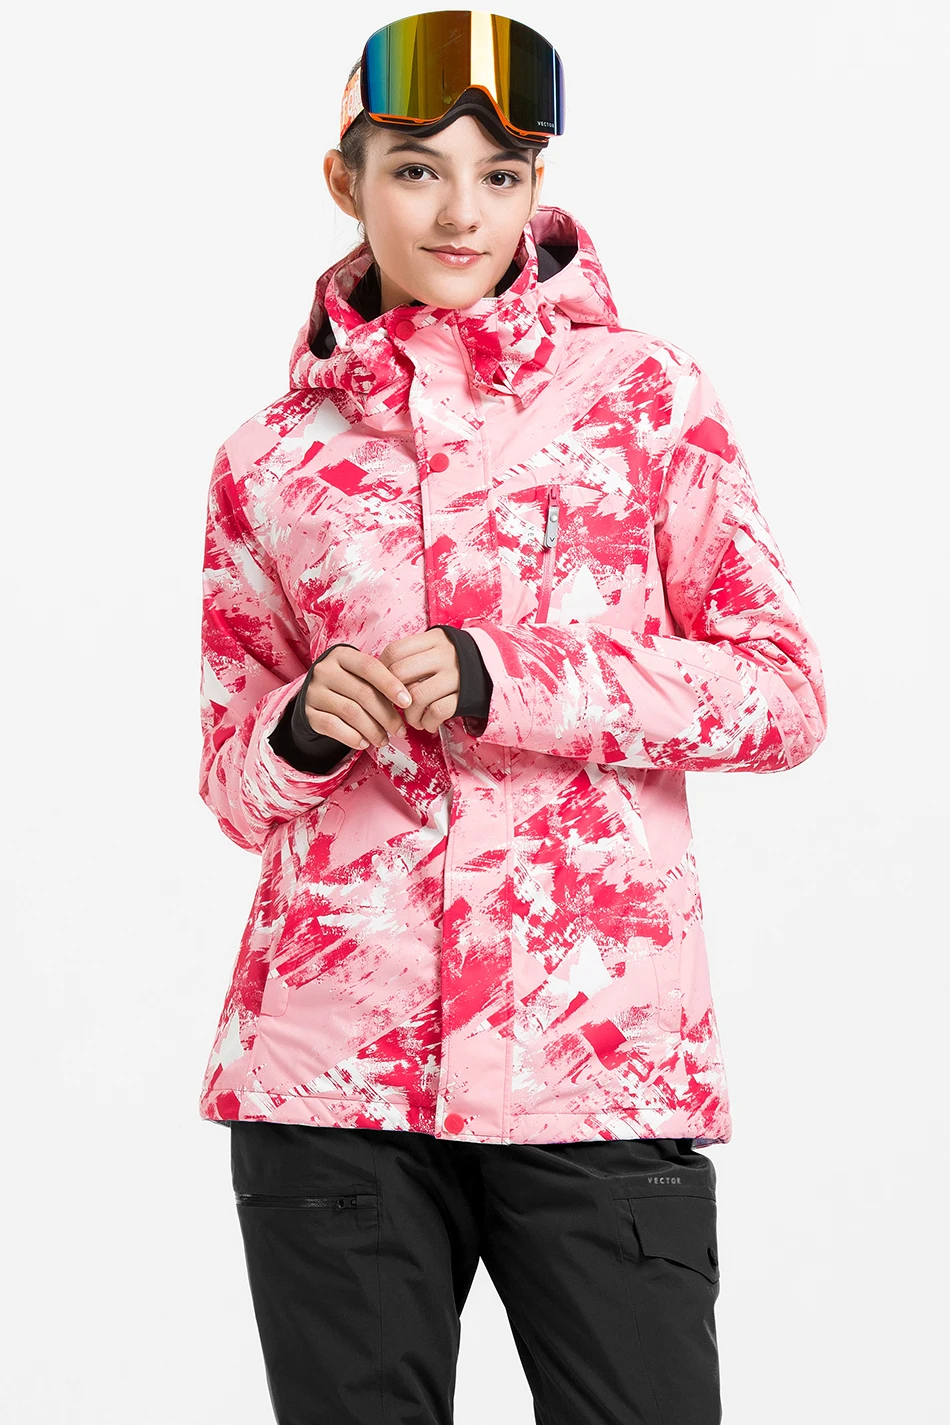 Векторная Профессиональная женская ветрозащитная Водонепроницаемая лыжная куртка, пальто, зимняя теплая уличная спортивная одежда для катания на лыжах и сноуборде